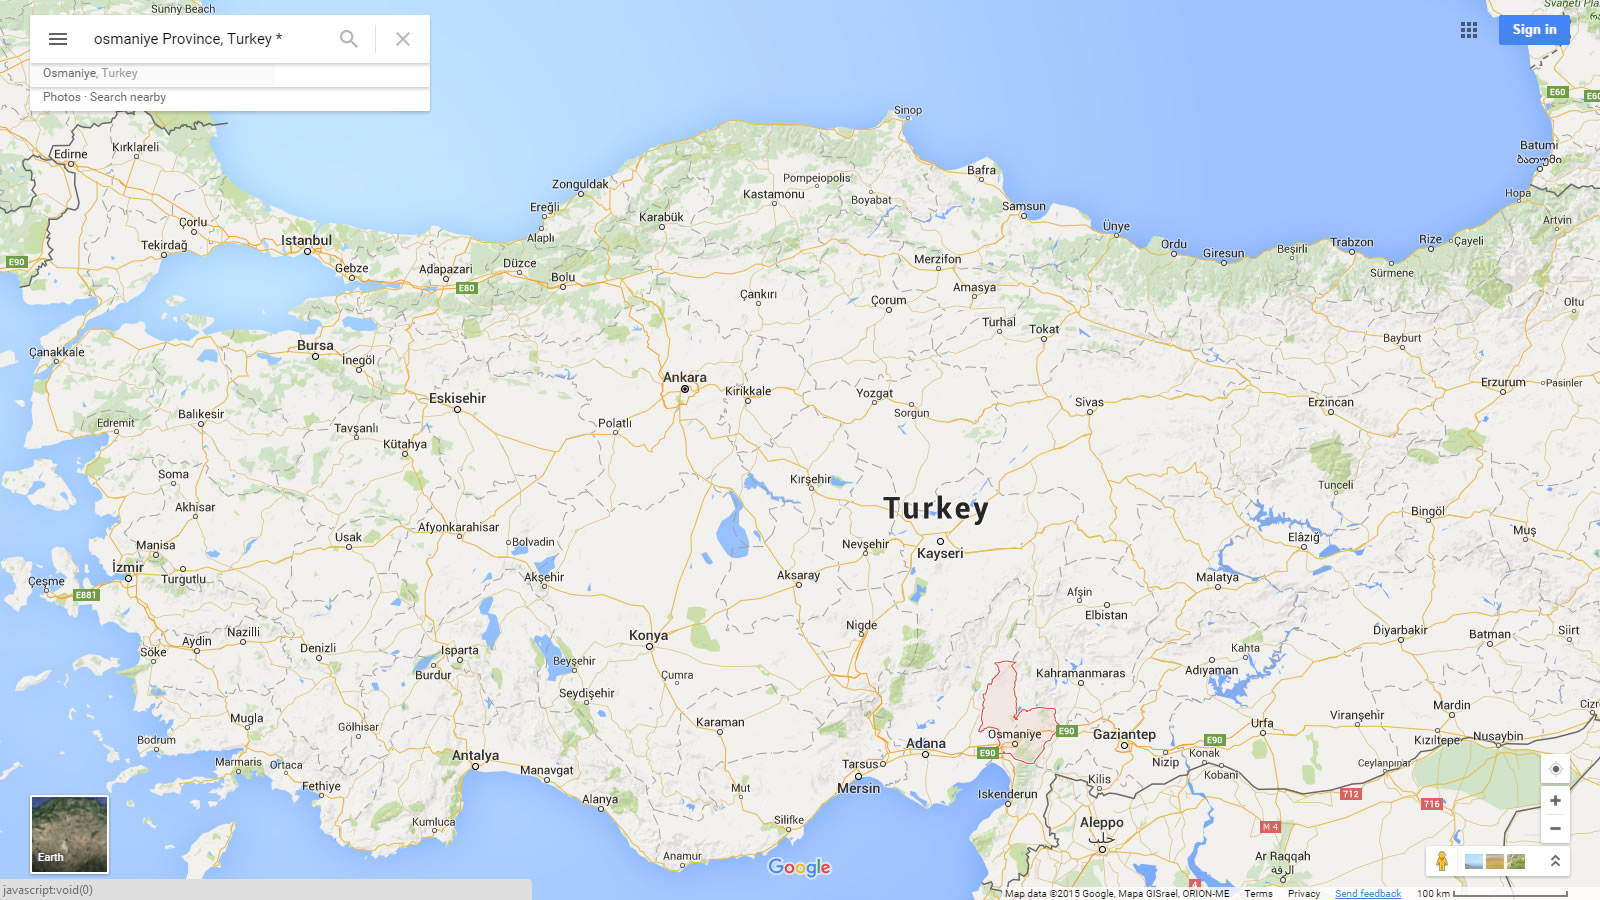 osmaniye karte turkei